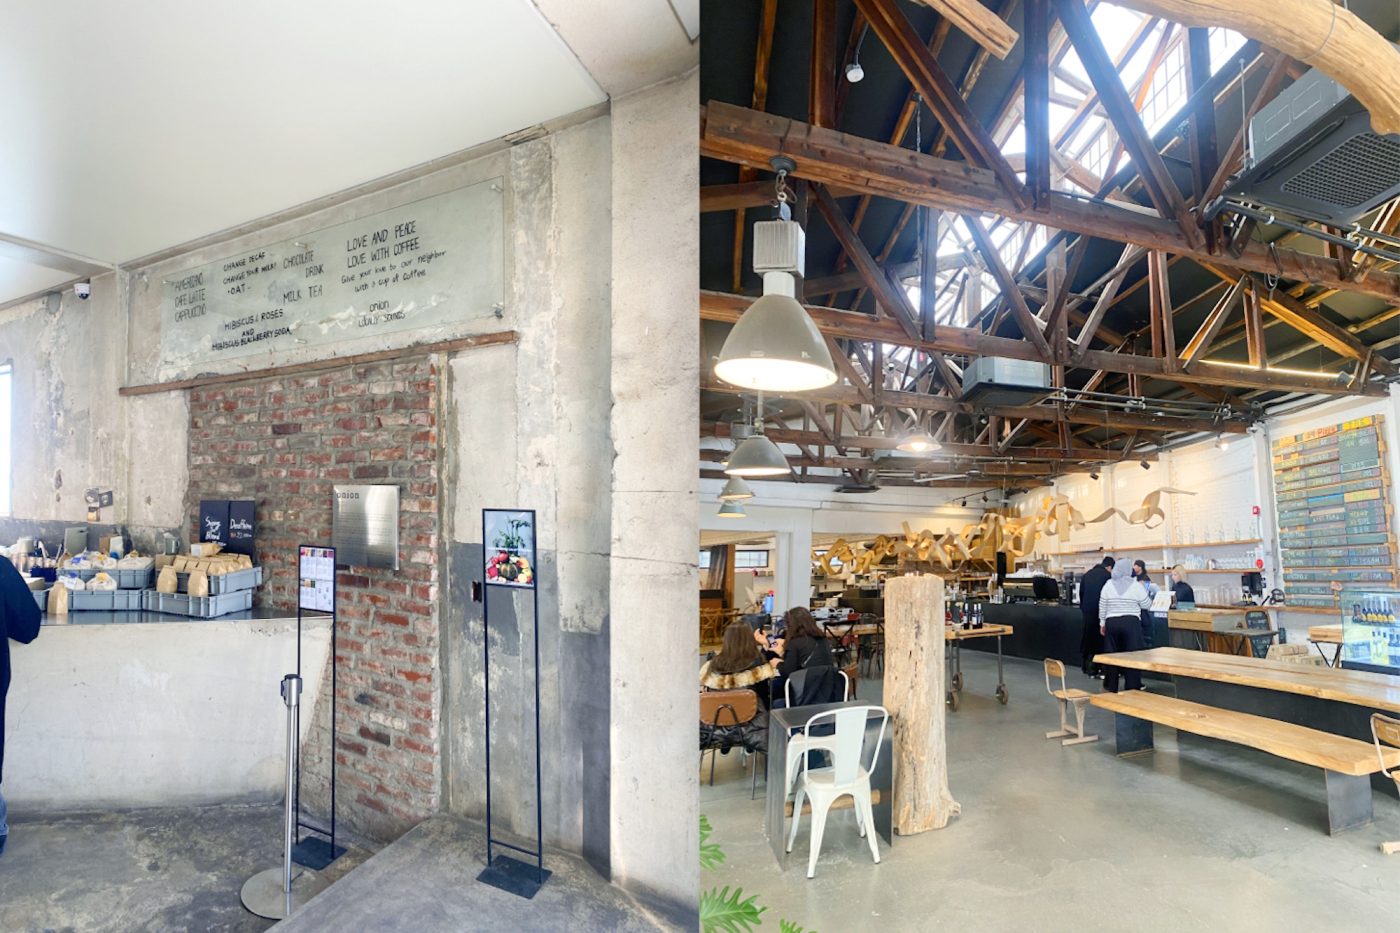 元々は町工場が立ち並ぶエリアだったソンスの工場や倉庫をリノベーションしたカフェ。